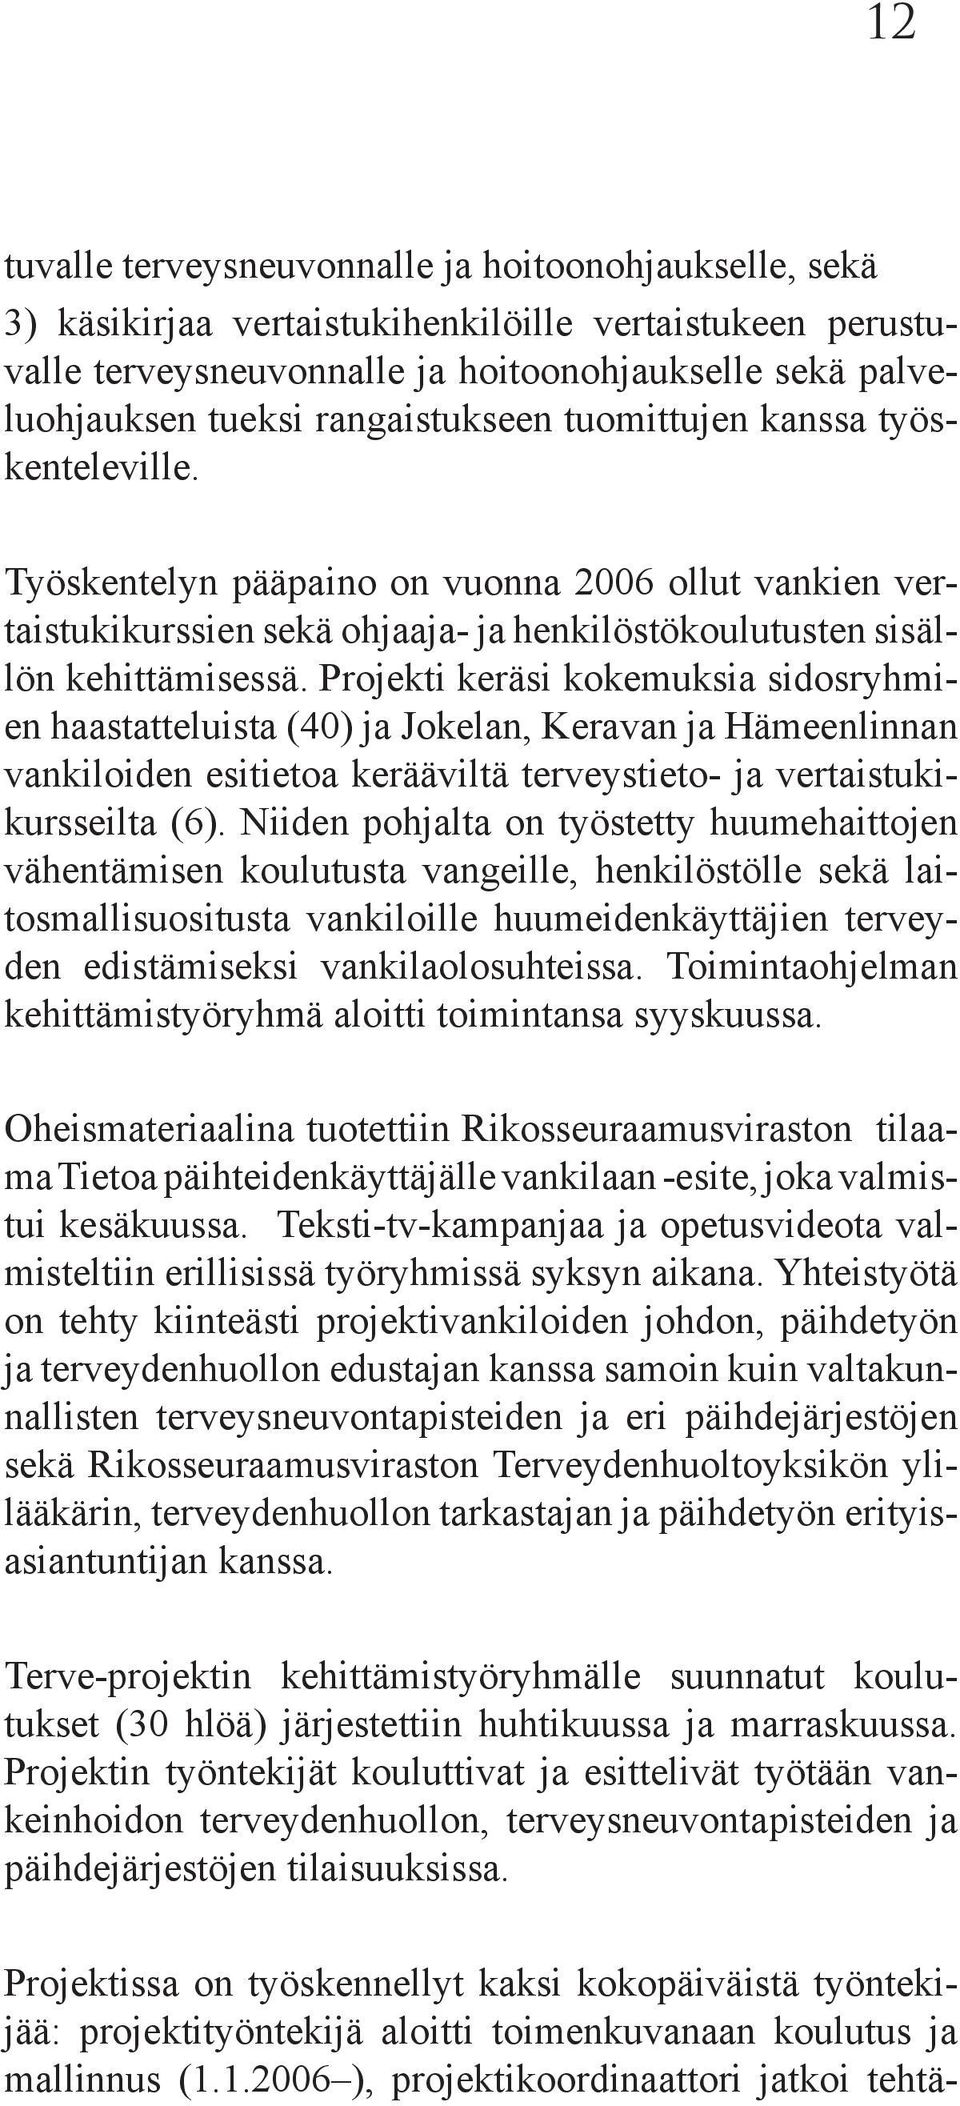 Projekti keräsi kokemuksia sidosryhmien haastatteluista (40) ja Jokelan, Keravan ja Hämeenlinnan vankiloiden esitietoa kerääviltä terveystieto- ja vertaistukikursseilta (6).